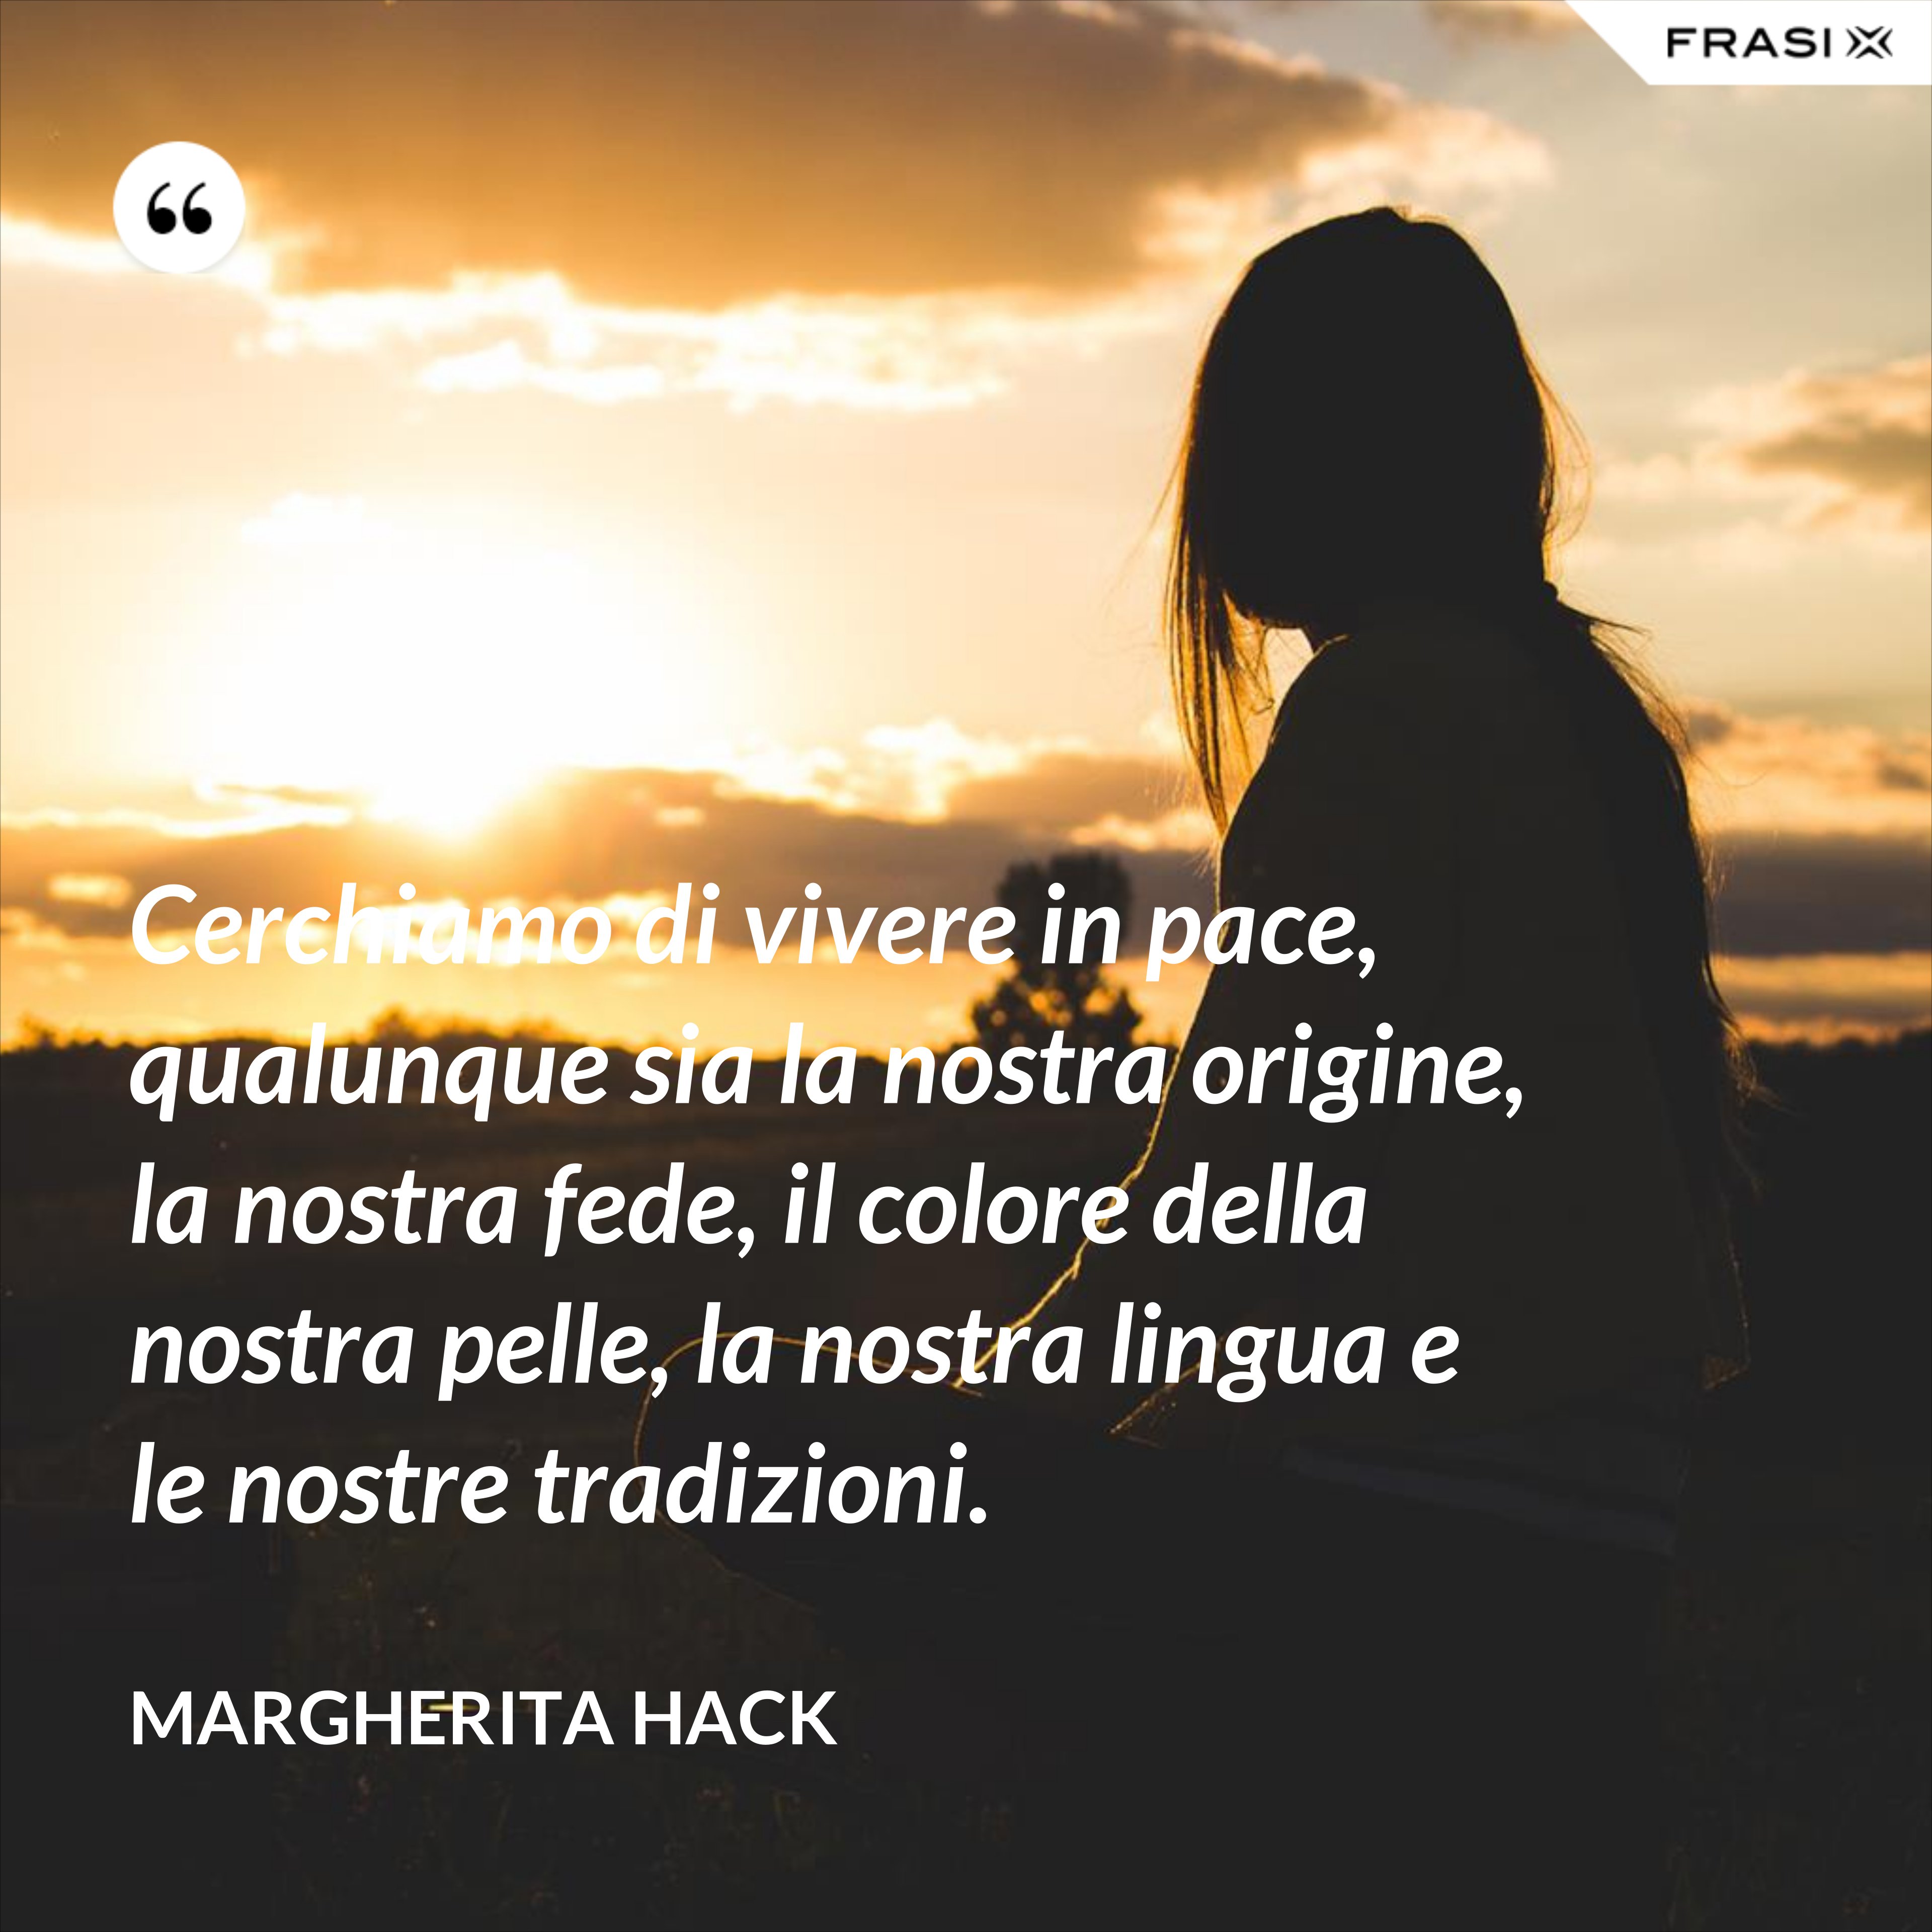 Cerchiamo di vivere in pace, qualunque sia la nostra origine, la nostra fede, il colore della nostra pelle, la nostra lingua e le nostre tradizioni. - Margherita Hack